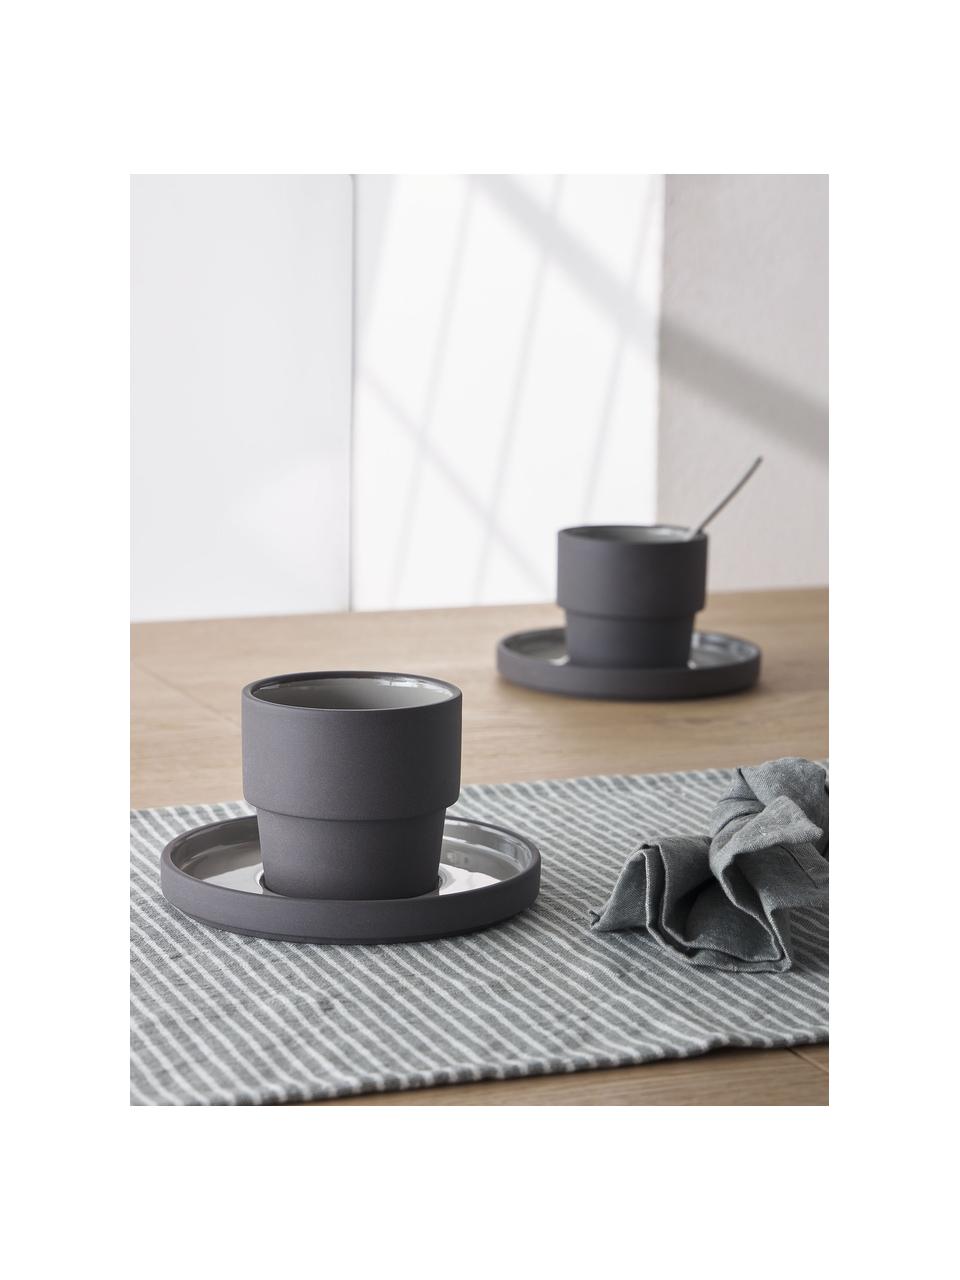 Kaffeetassen mit Untertassen Thianela aus Porzellan in Grau, 4 Stück, Porzellan, Grautöne, Ø 8 x H 8 cm, 200 ml